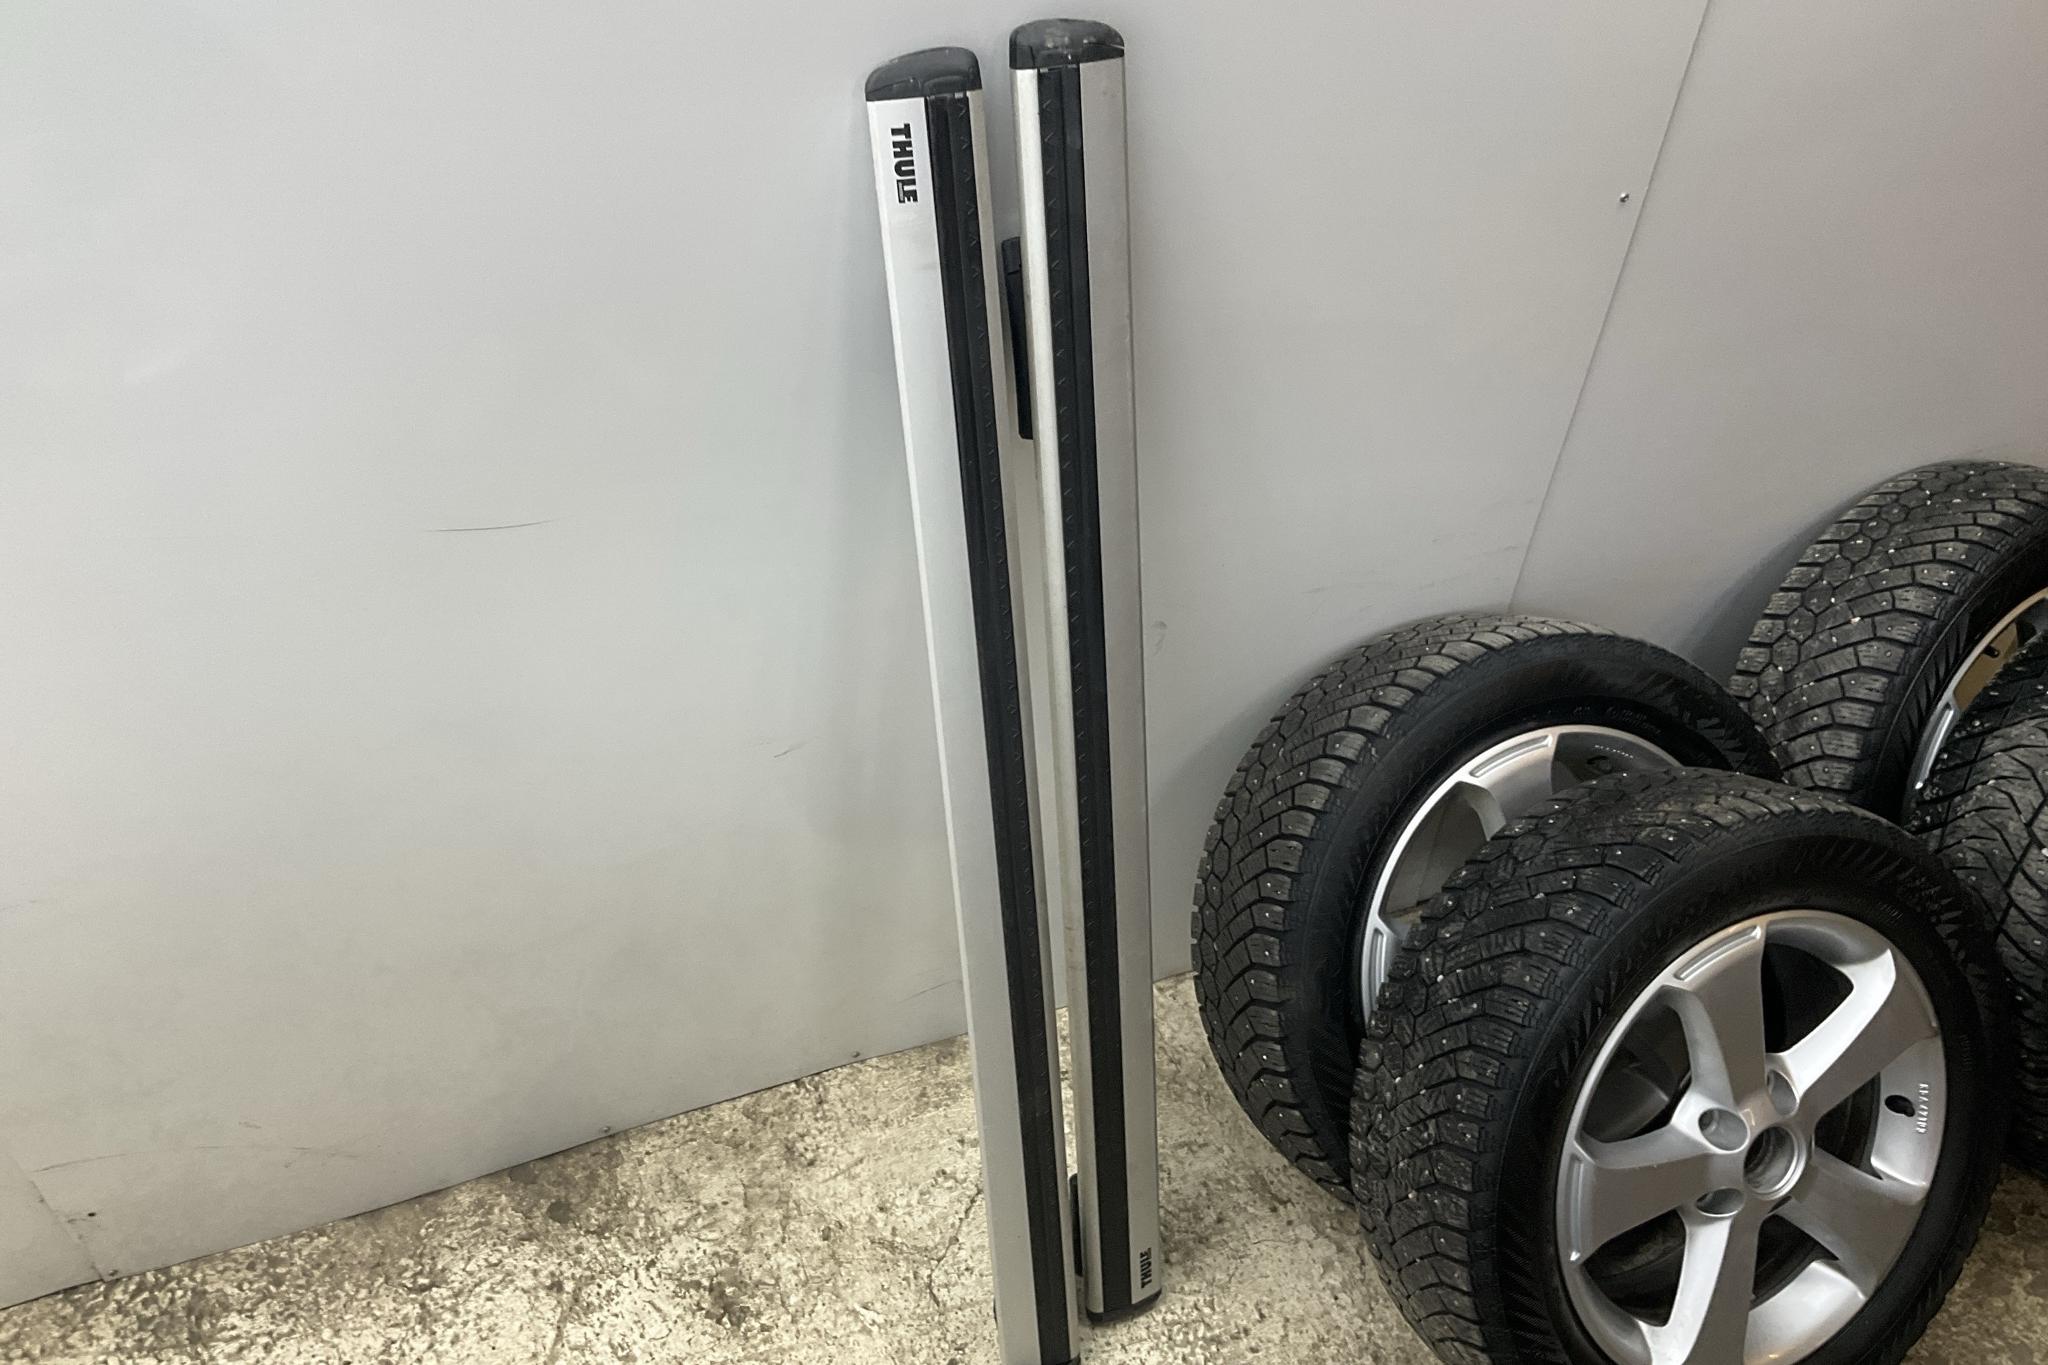 VW Caddy 1.4 TGI Maxi Skåp (110hk) - 4 648 mil - Automat - vit - 2019